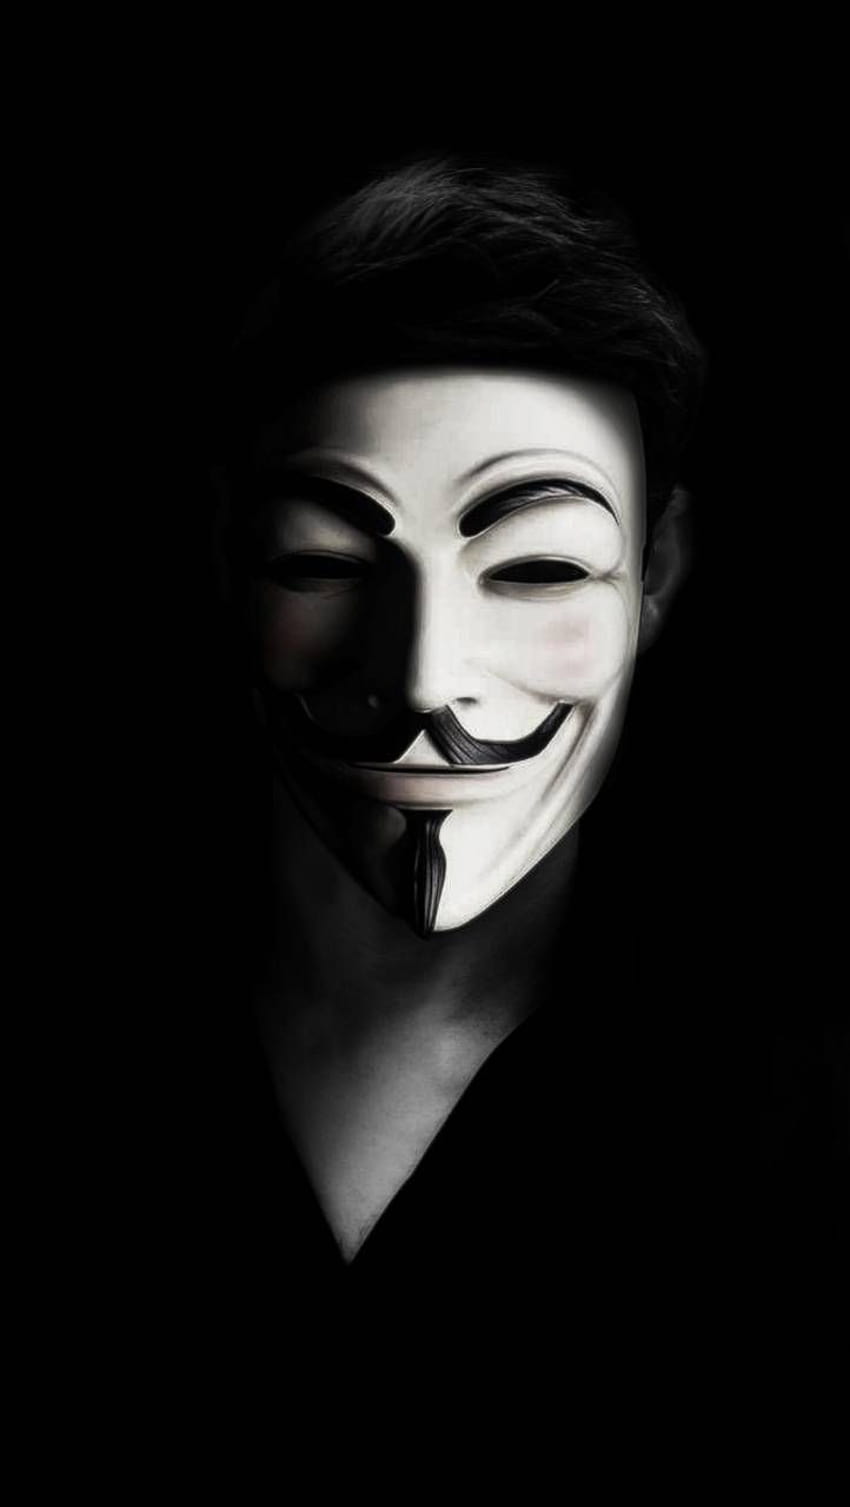 Hacker Neon mask Wallpaper Download | MobCup